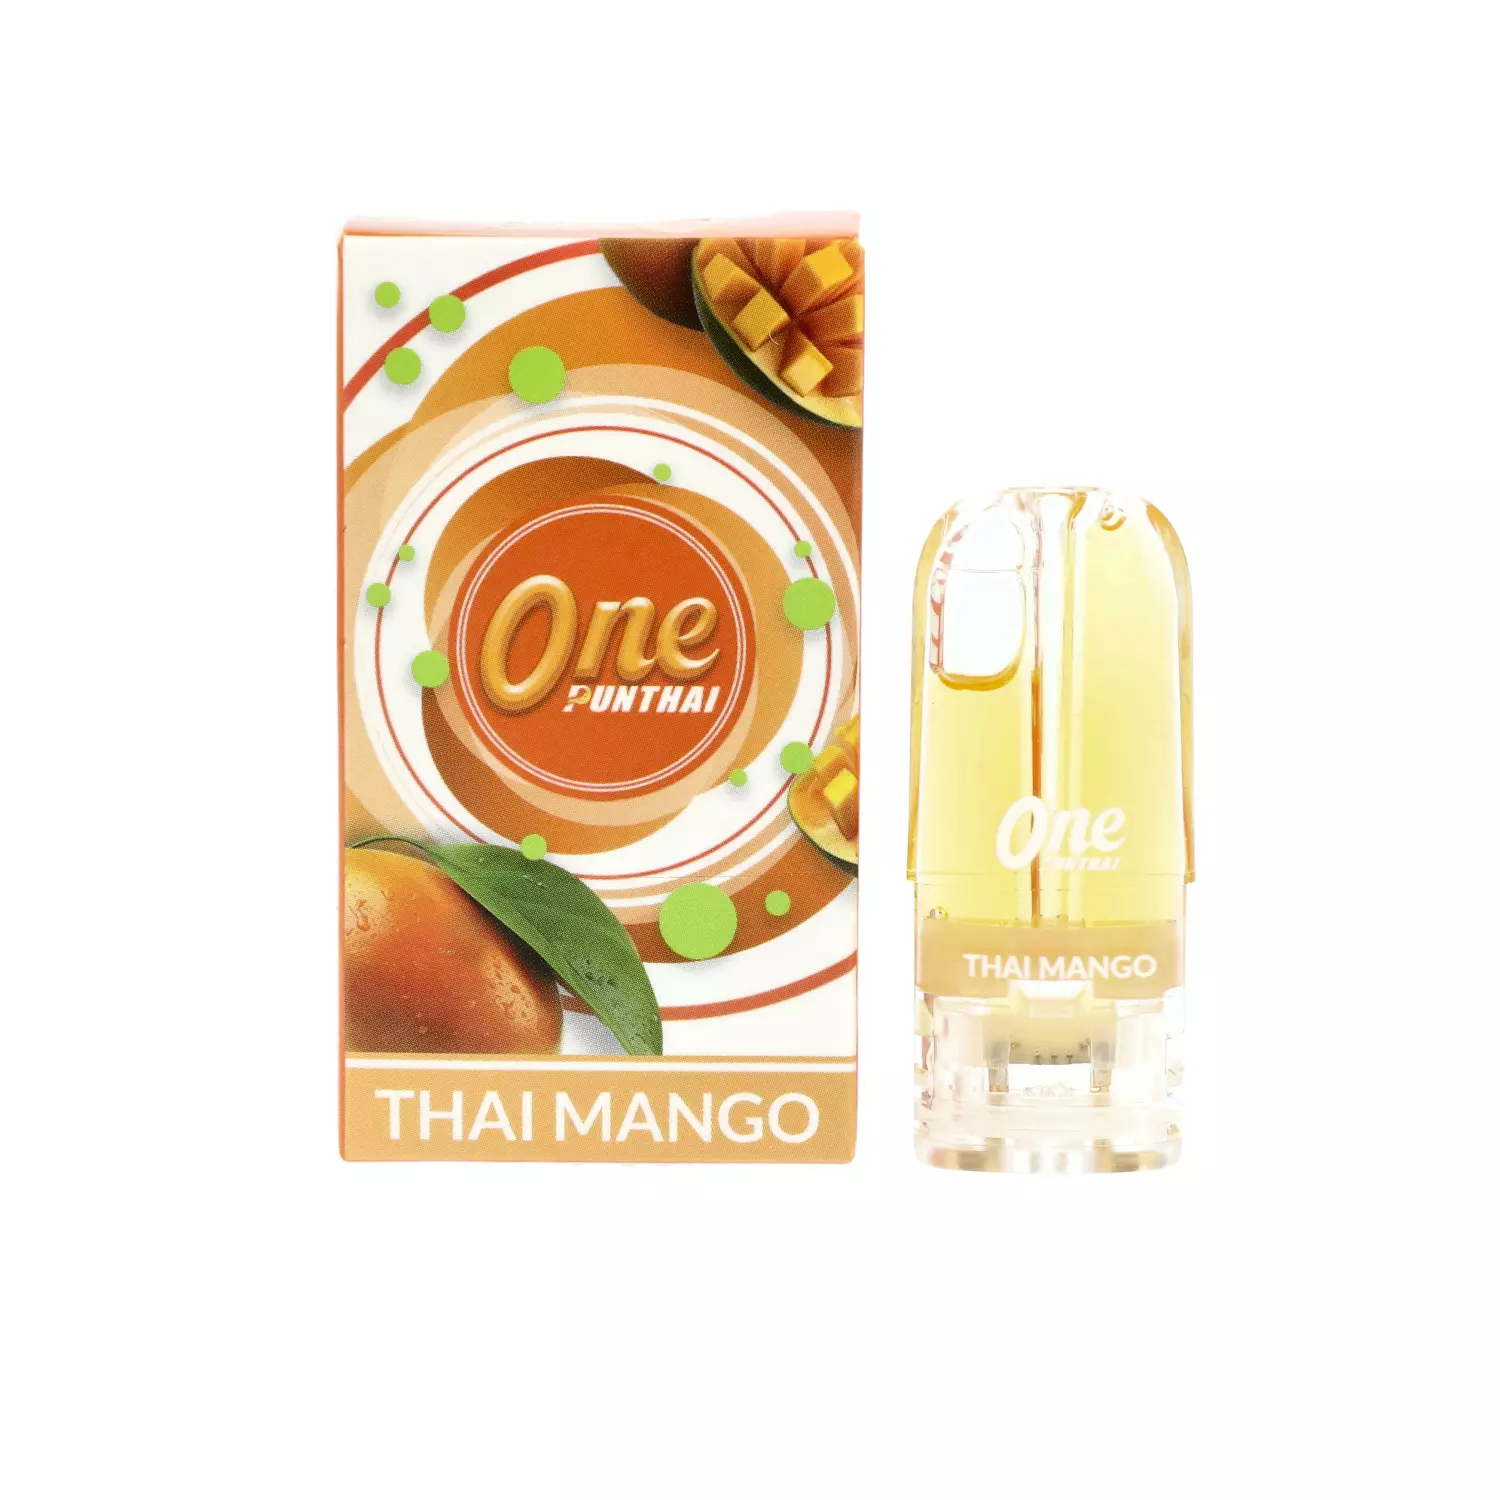 one punthai pod thai mango